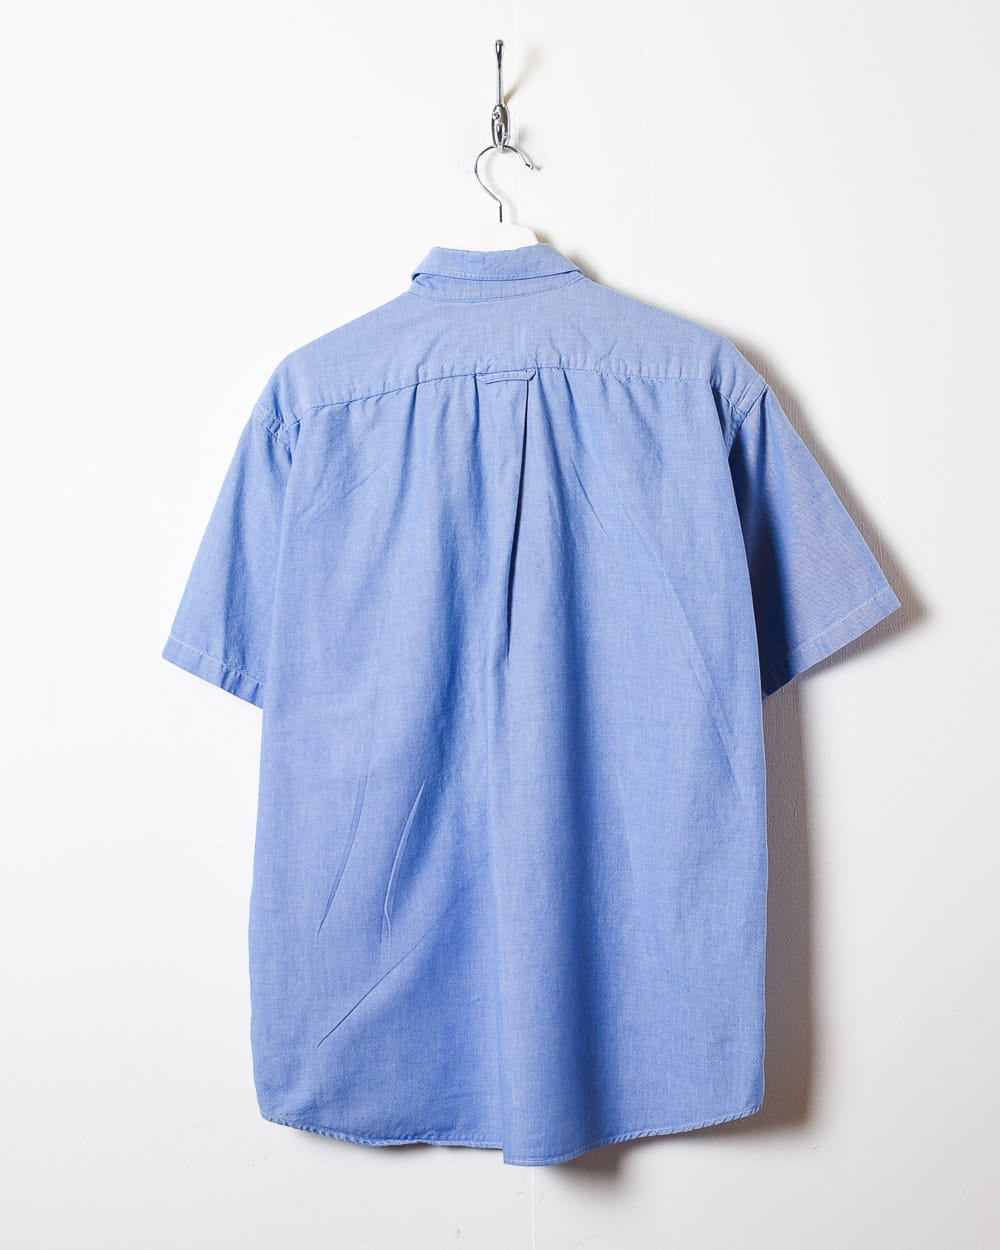 BabyBlue Lacoste Short Sleeved Shirt - X-Large